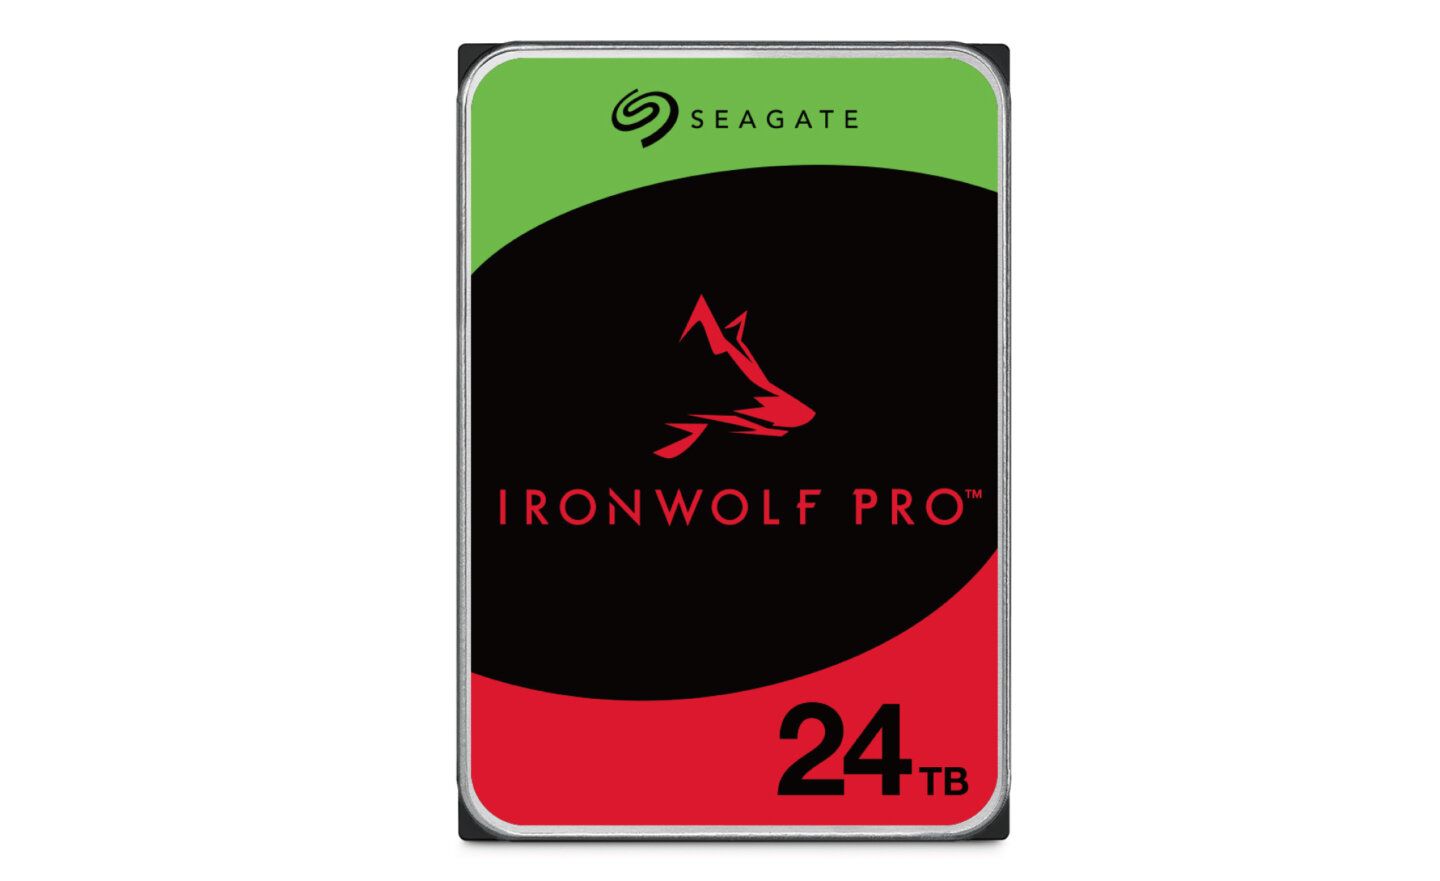 Seagate推出 IronWolf Pro 24TB 硬碟，預計 3/1 在台灣上市